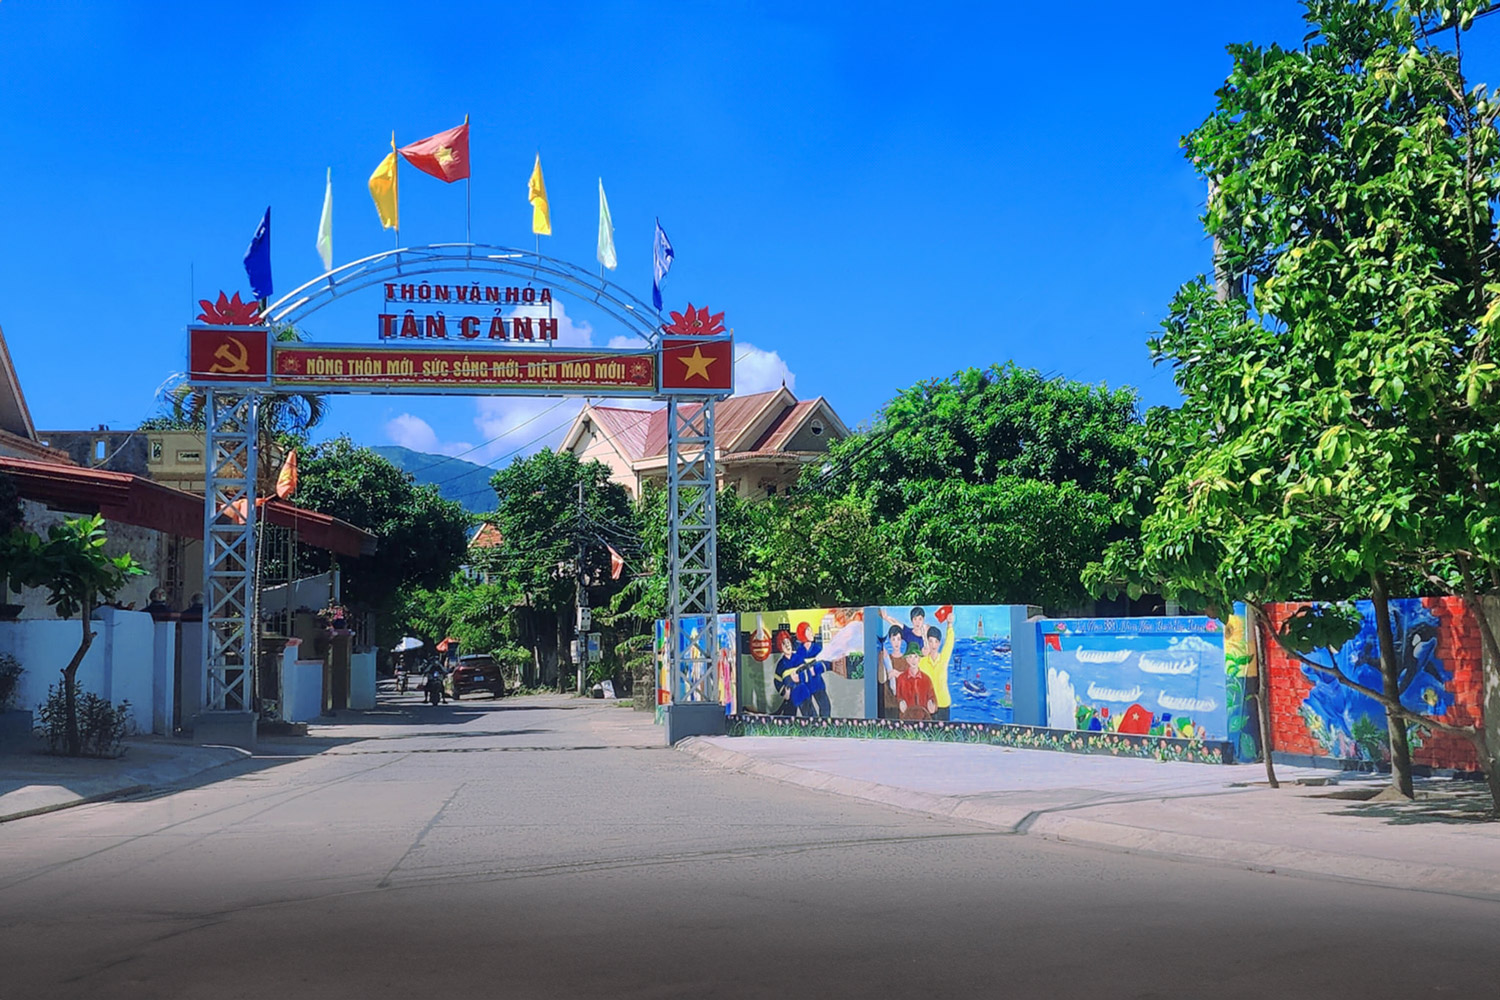 Cổng Thôn Văn hóa Tân Cảnh nơi đi đến làng bích họa Cảnh Dương